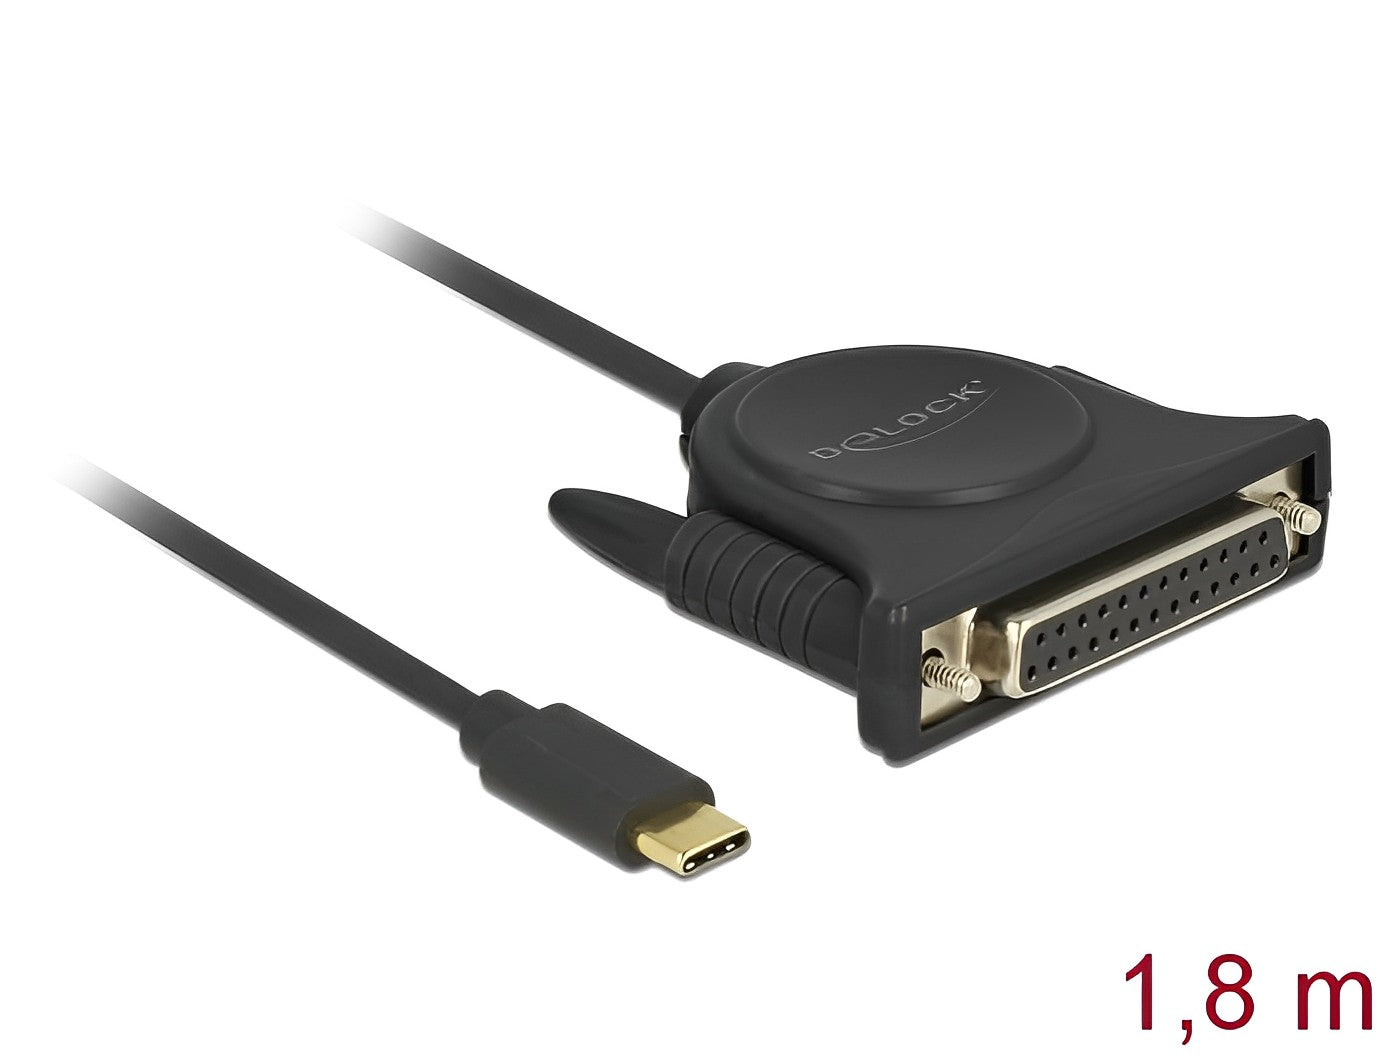 ממיר USB-C זכר לתקע פרלל DB25 Parallel צ'יפ Prolific אורך 1.8 מטר - delock.israel